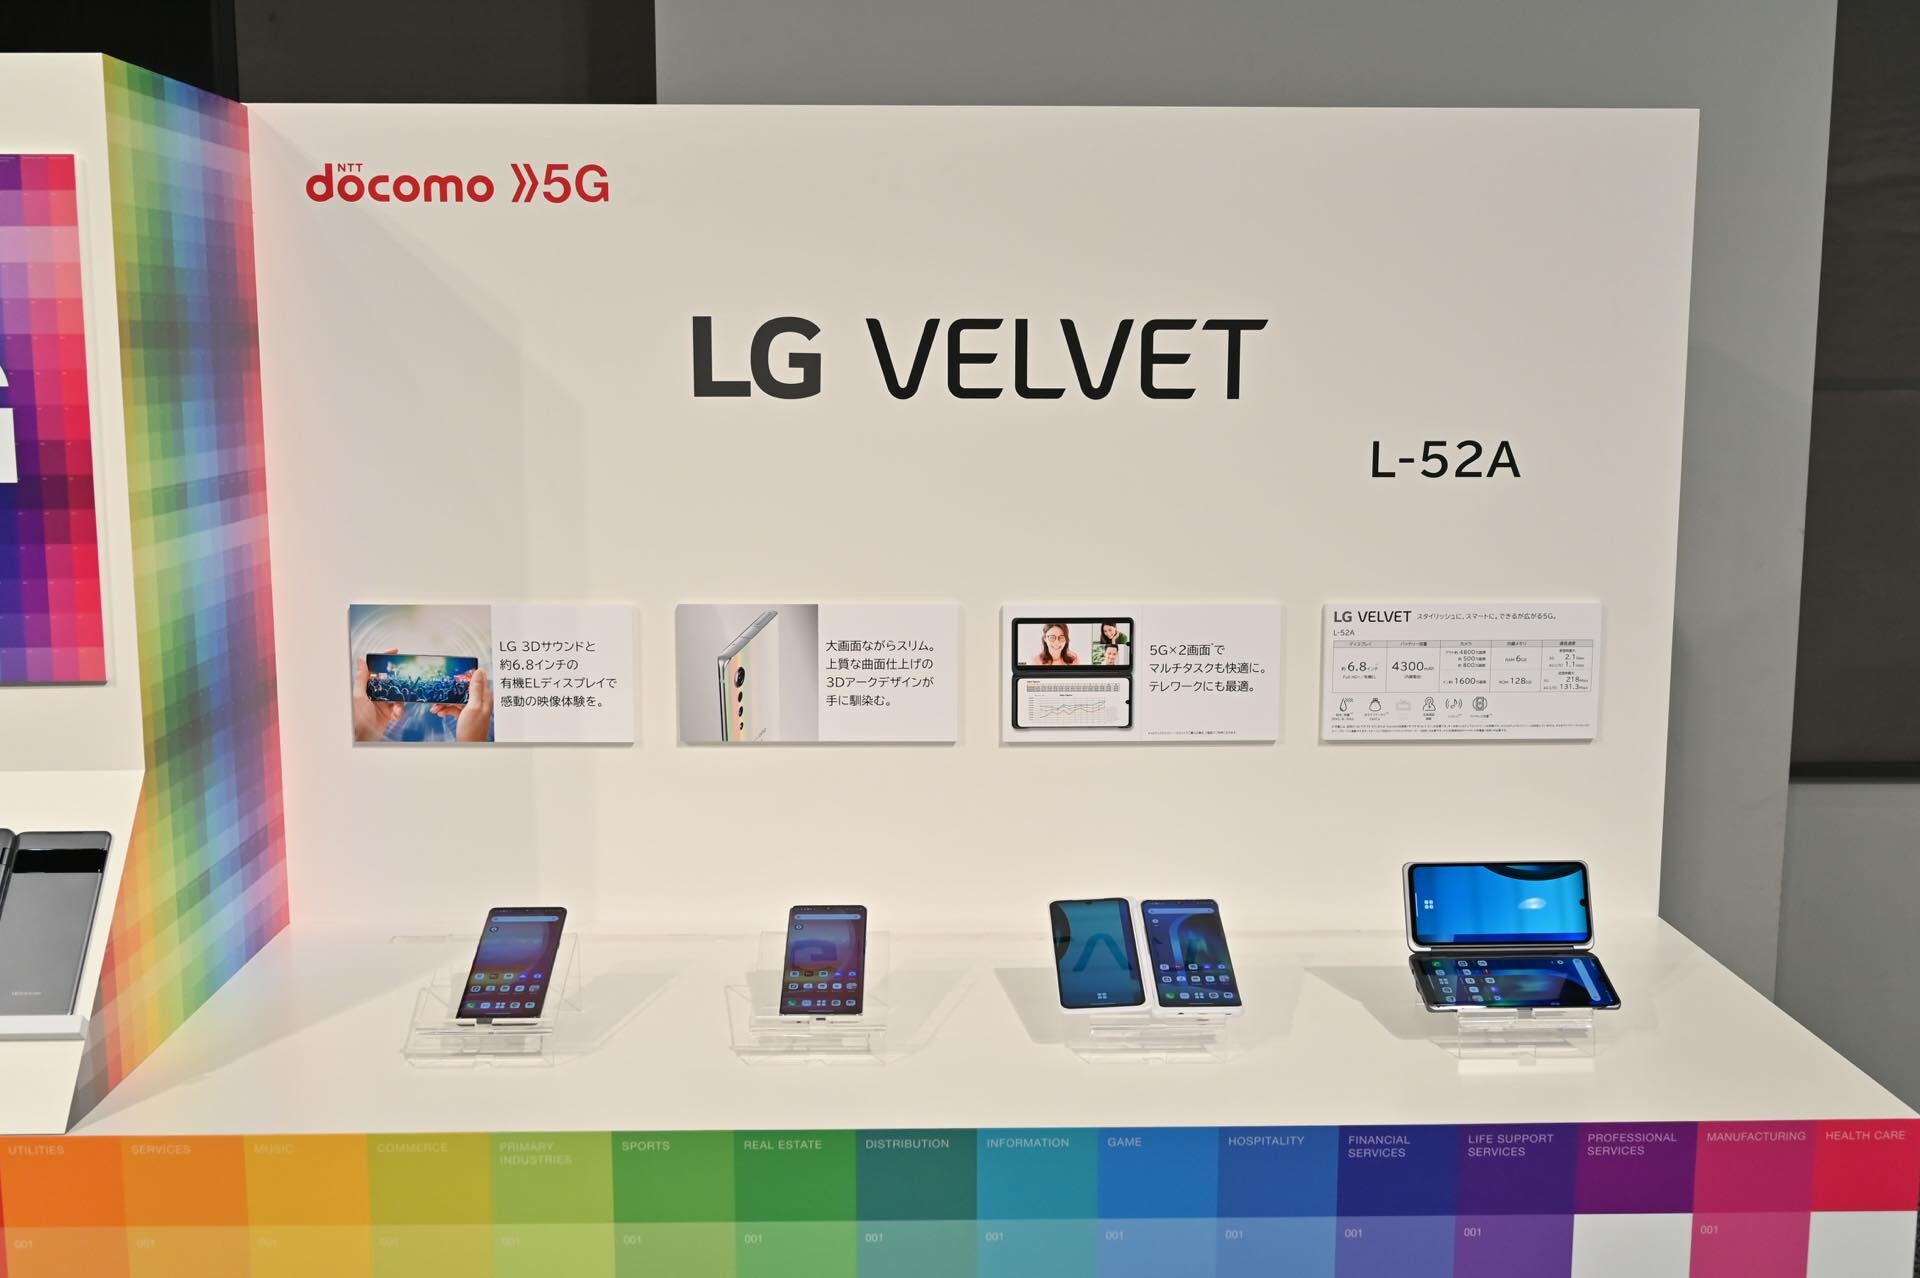 NTTドコモ、5Gスマホ「LG VELVET L-52A」を発表！12月下旬発売で、価格 